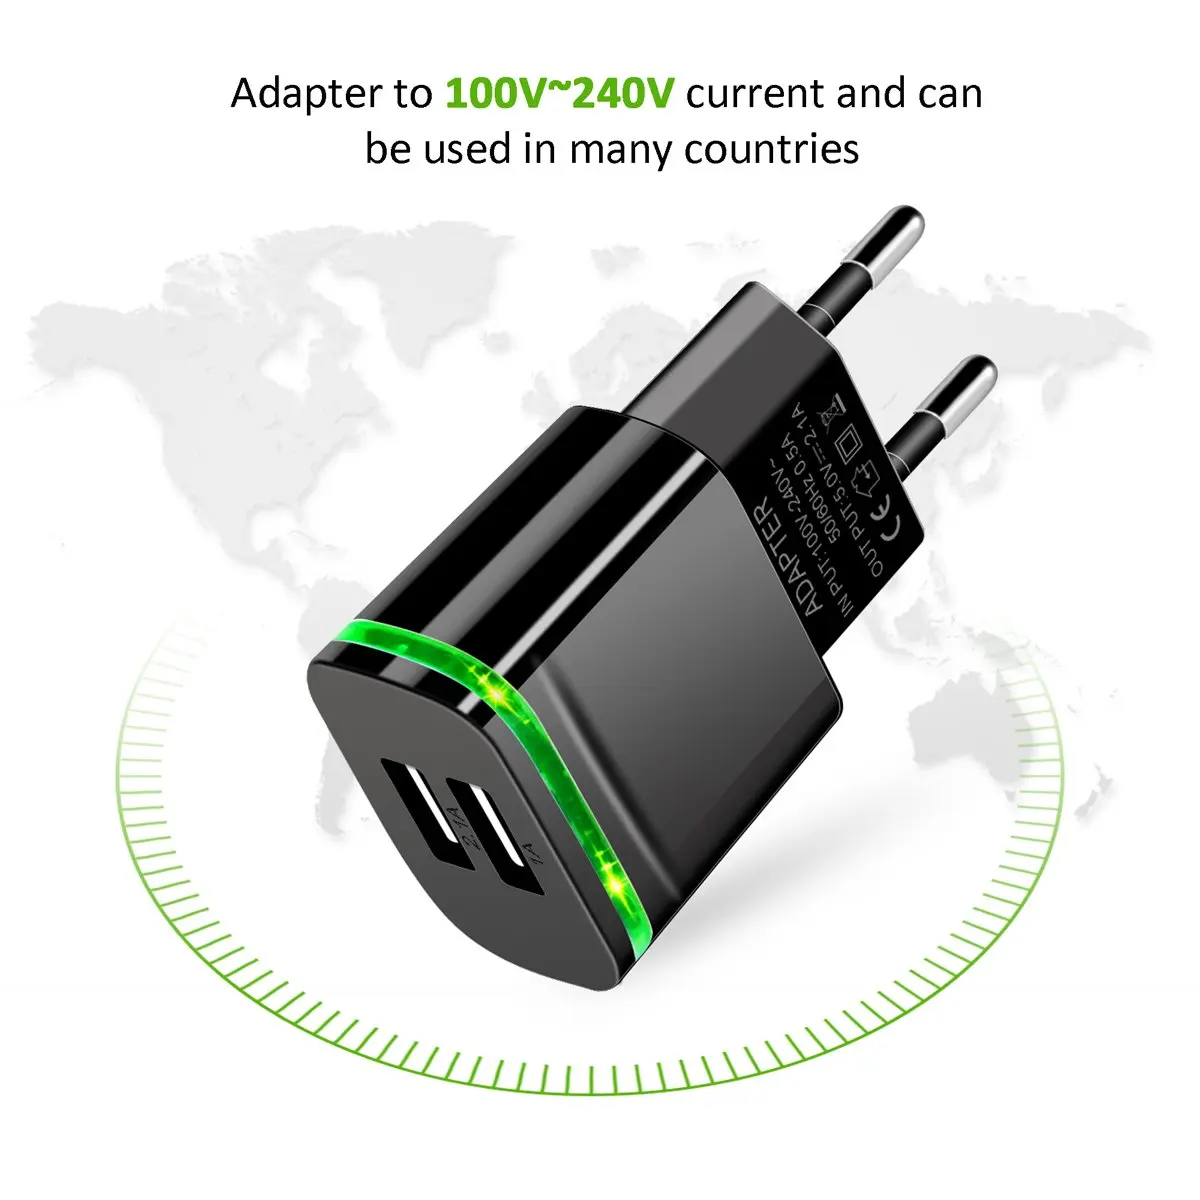 5V 2.1a/1a 2 Порты USB зеленый светодиодный светильник EU Штепсель быстрое Зарядное устройство Кабельный адаптер для LG K10 K4 K5 K7 K8 Q6 X power K220DS G4 G5